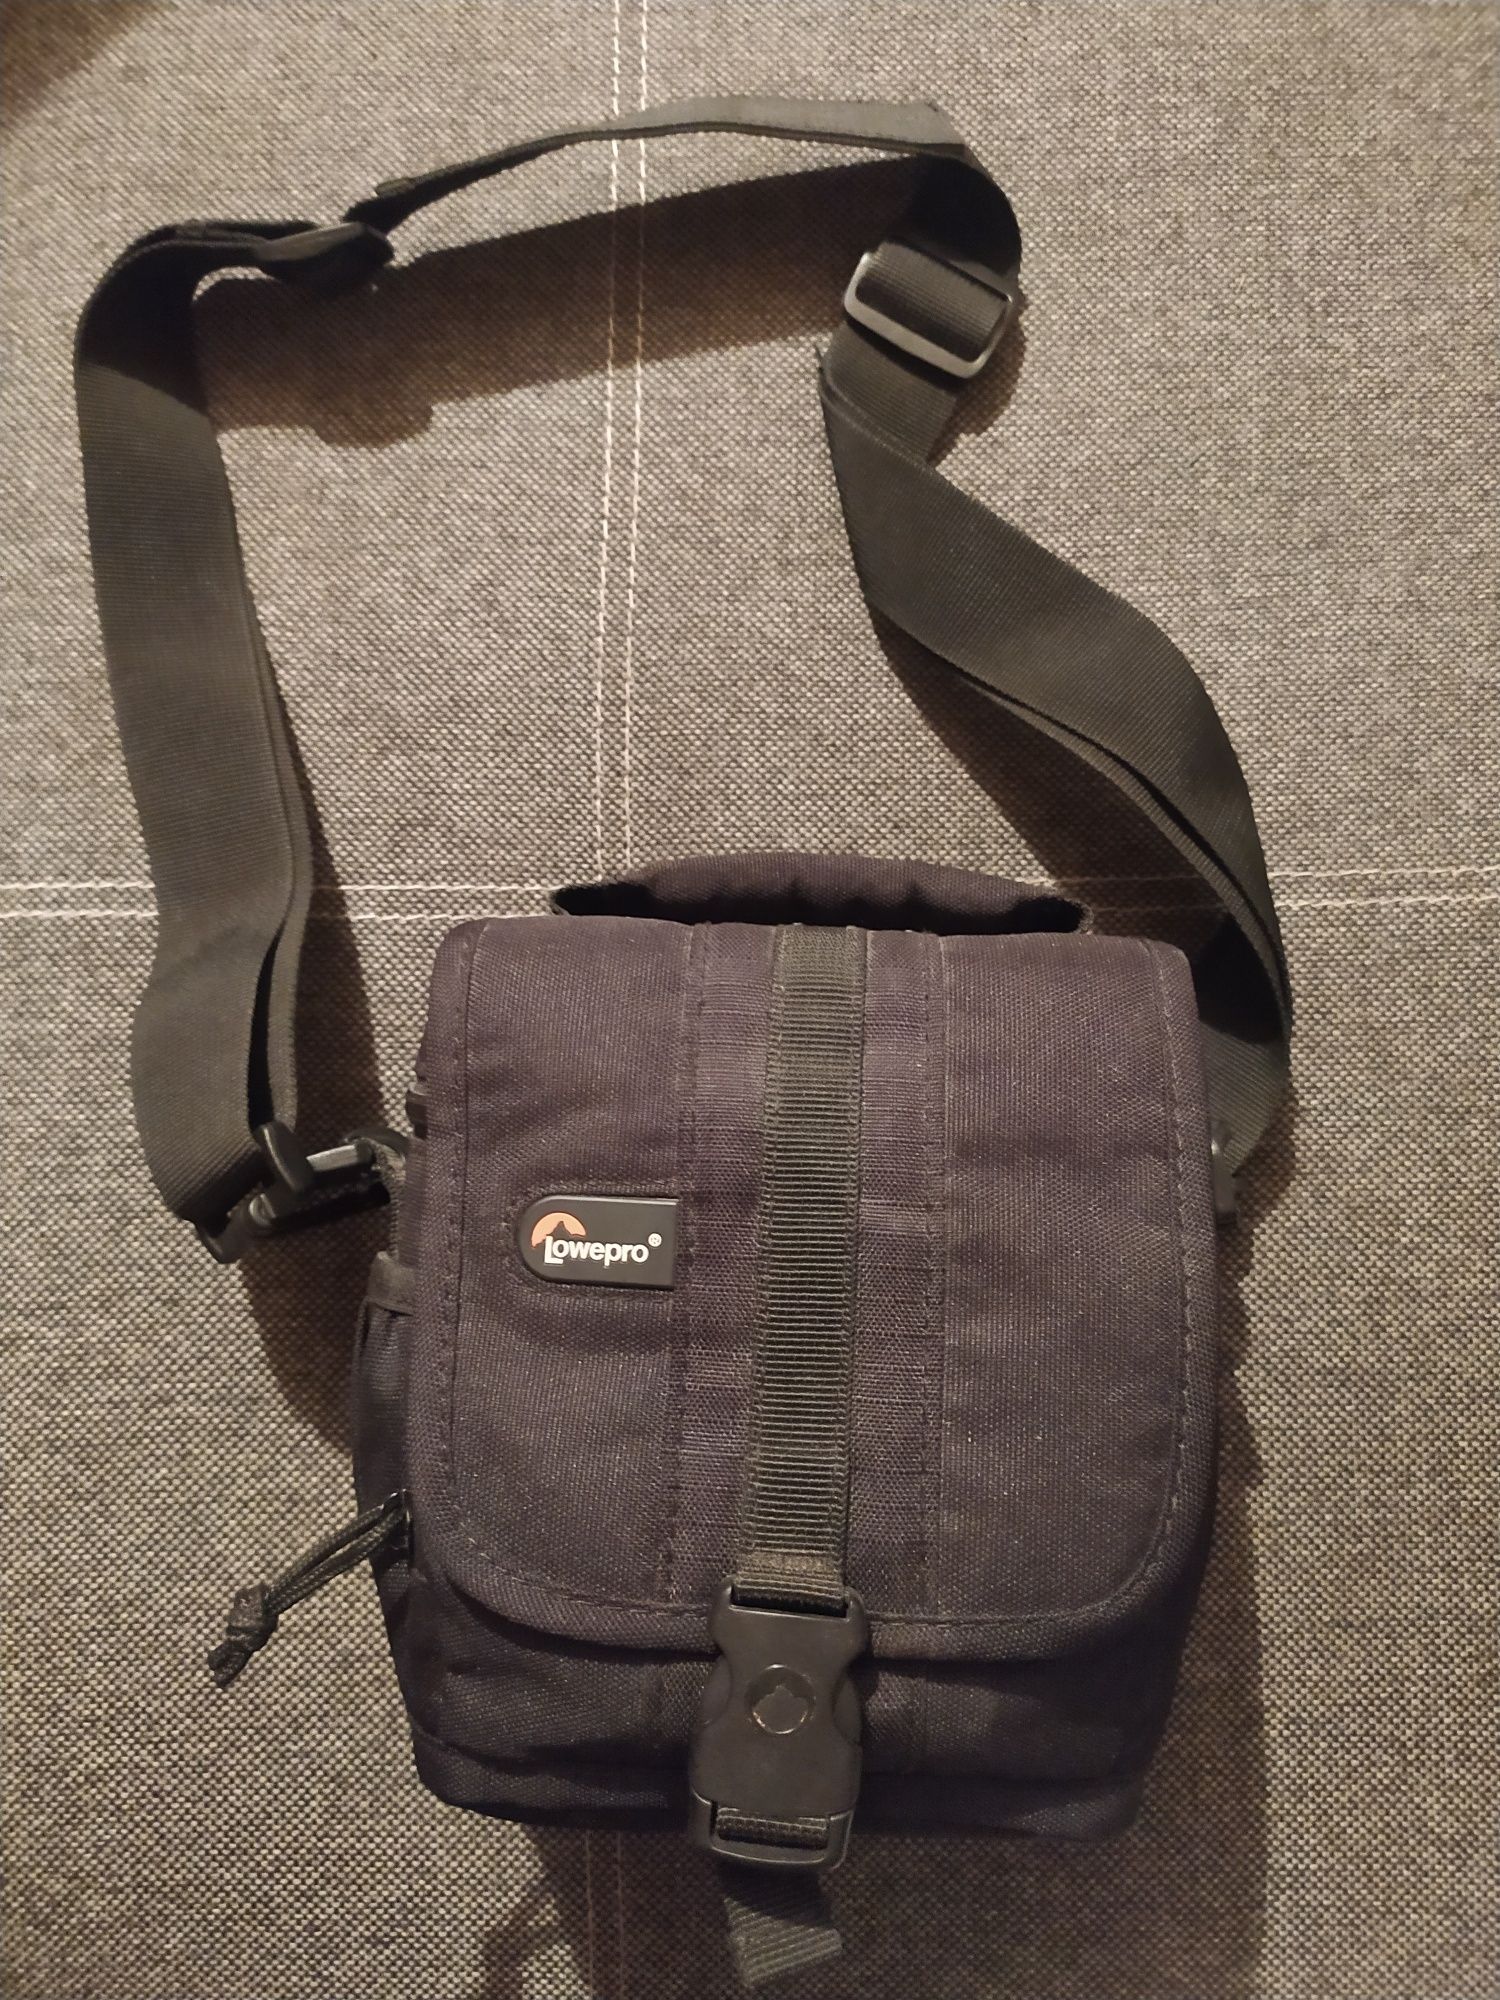 Aparat Panasonic Lumix G6k + obiektyw torba gratis